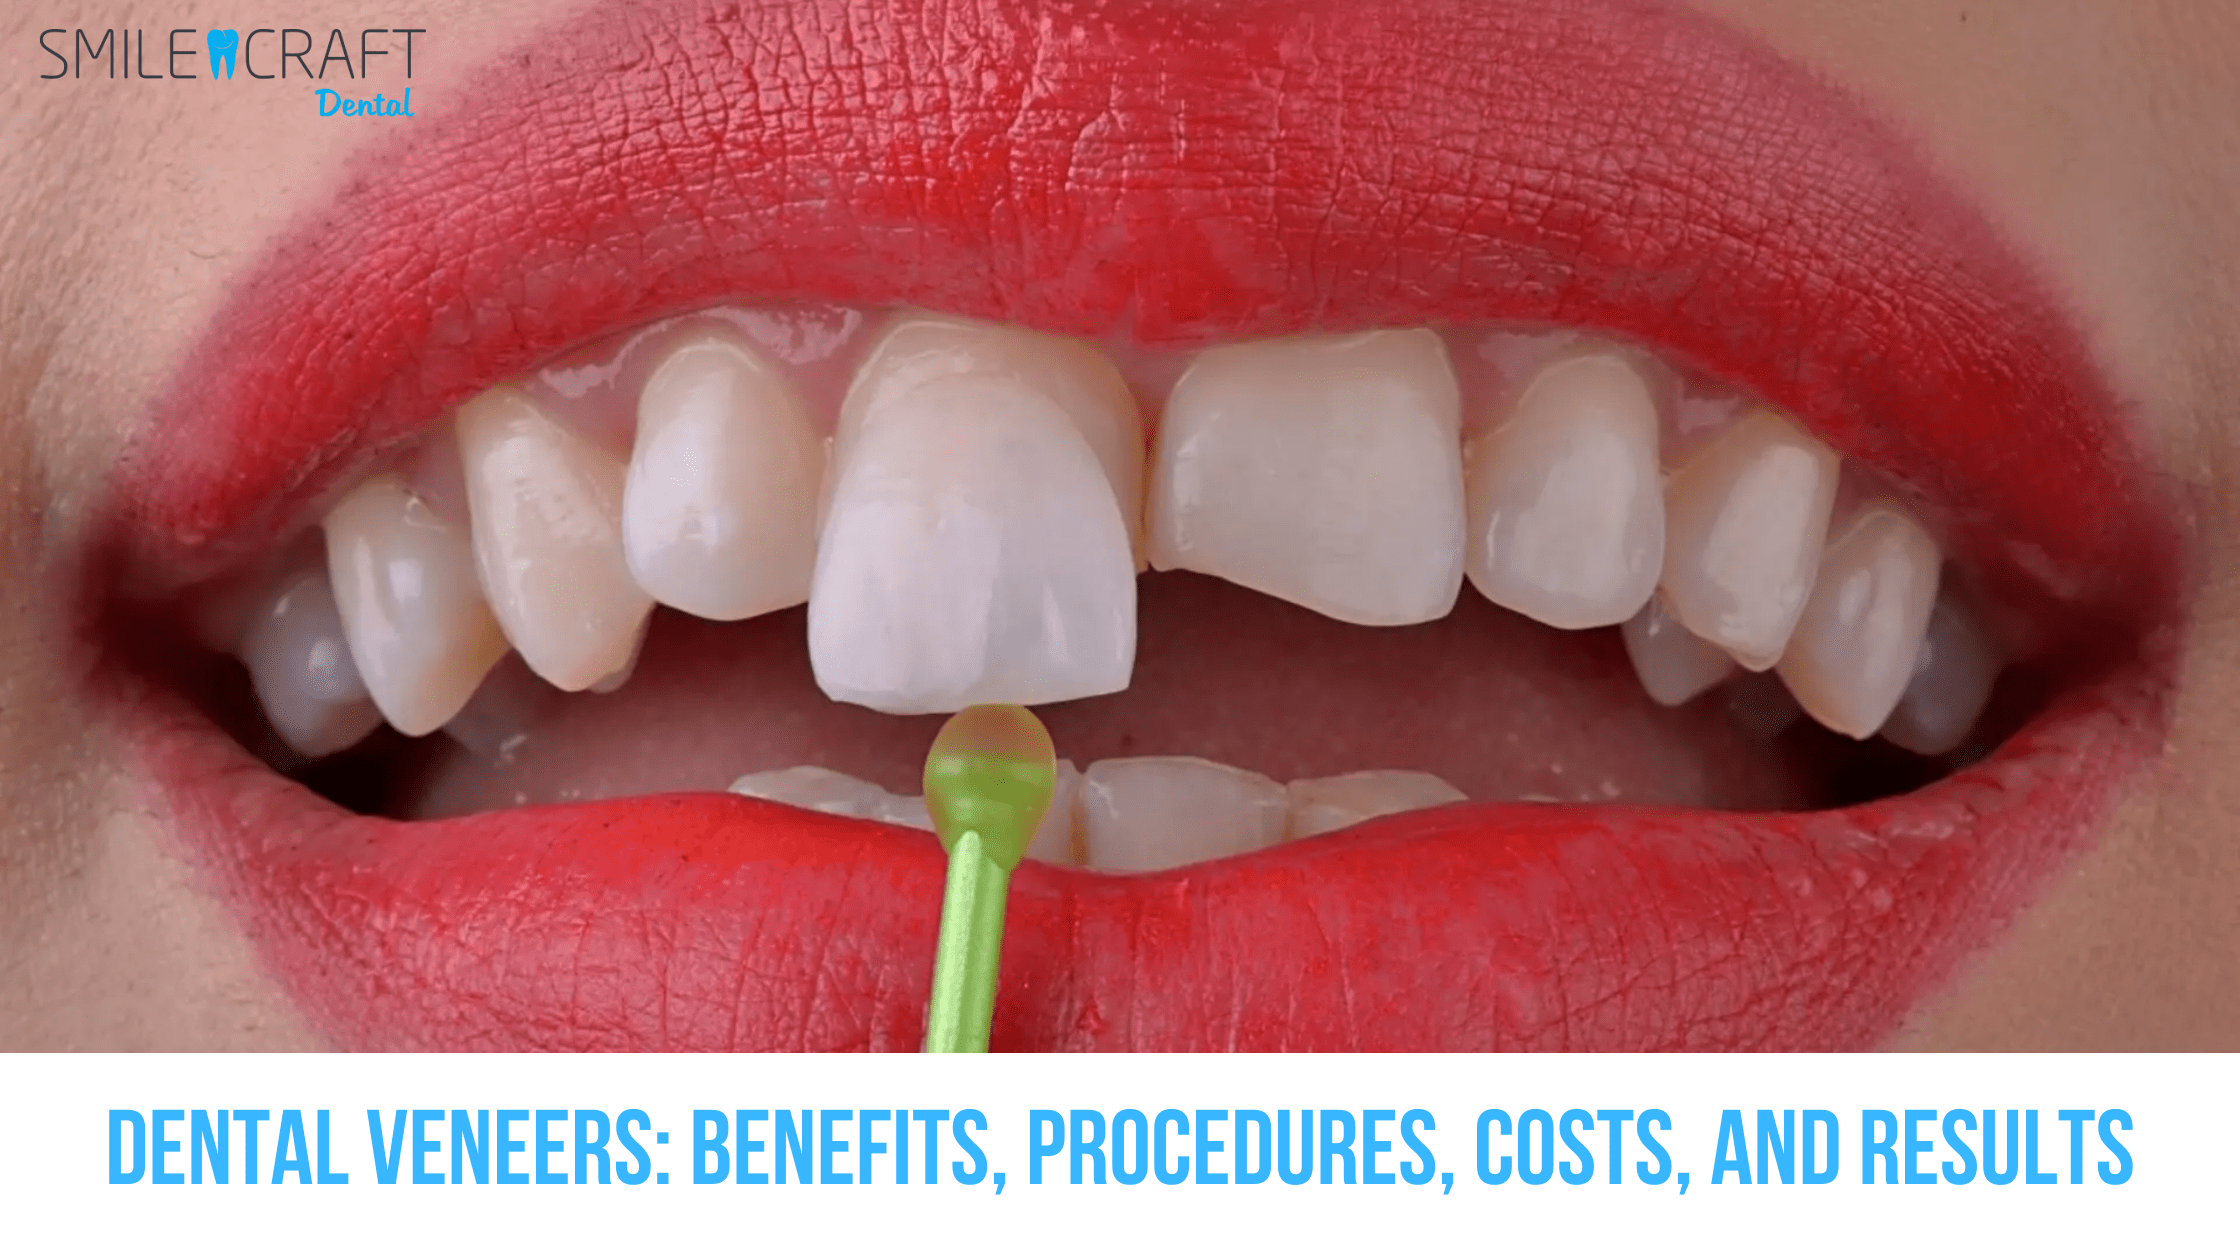 dental venner - benefits, procedure, cost etc